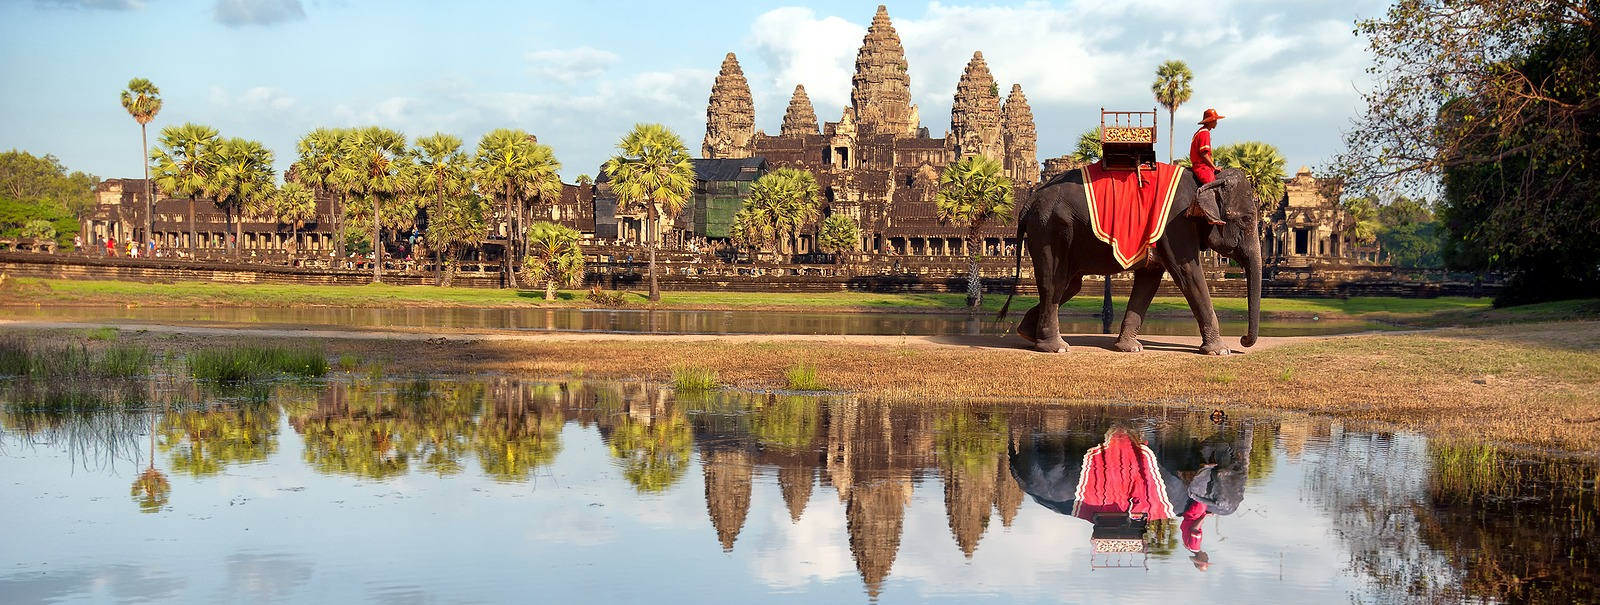 Rundreise Kambodscha und Badeurlaub in Thailand